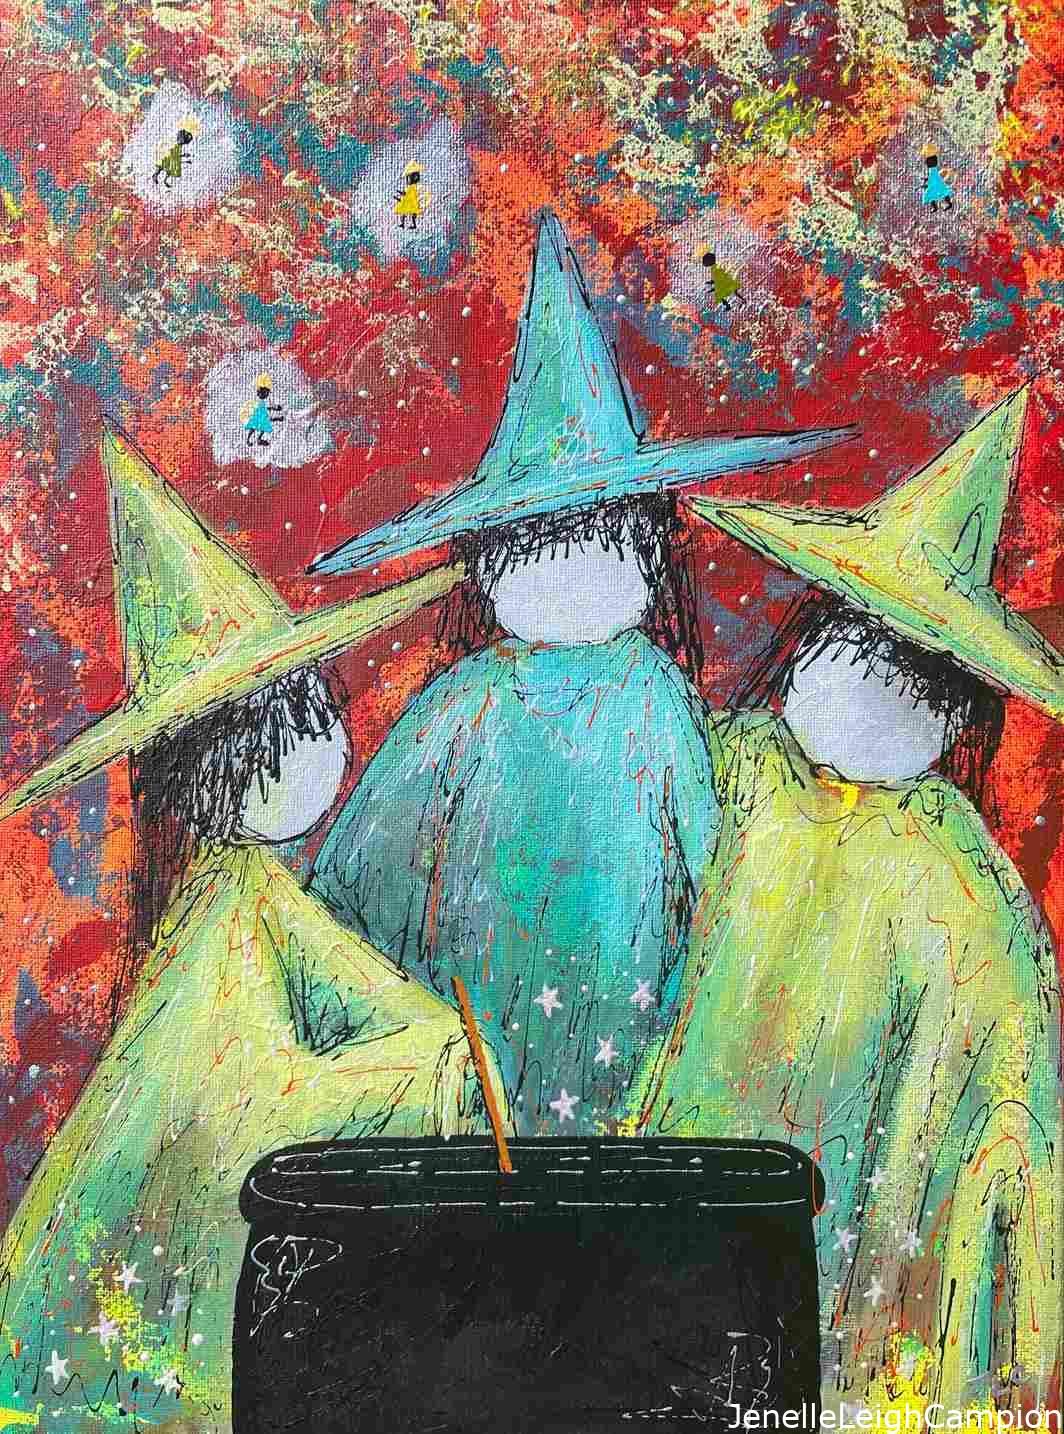 Witch Cauldron